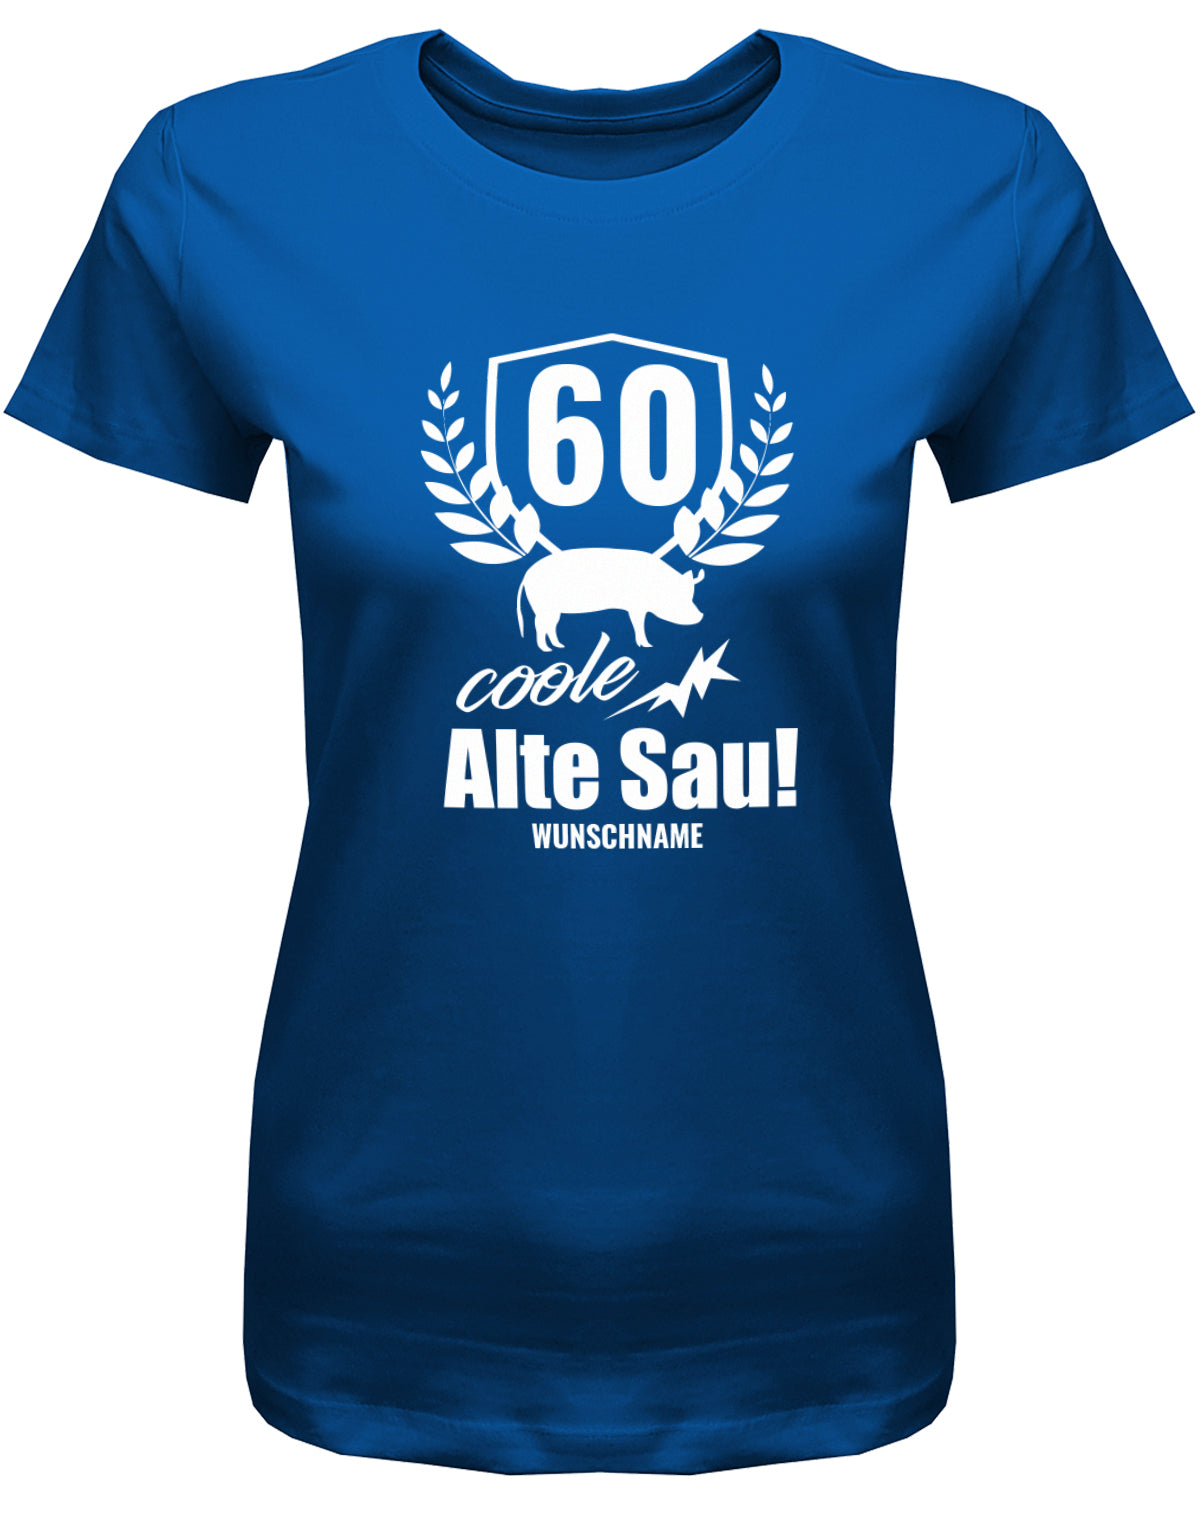 Lustiges T-Shirt zum 60 Geburtstag für die Frau Bedruckt mit 60 coole alte Sau personalisiert mit Name Royalblau